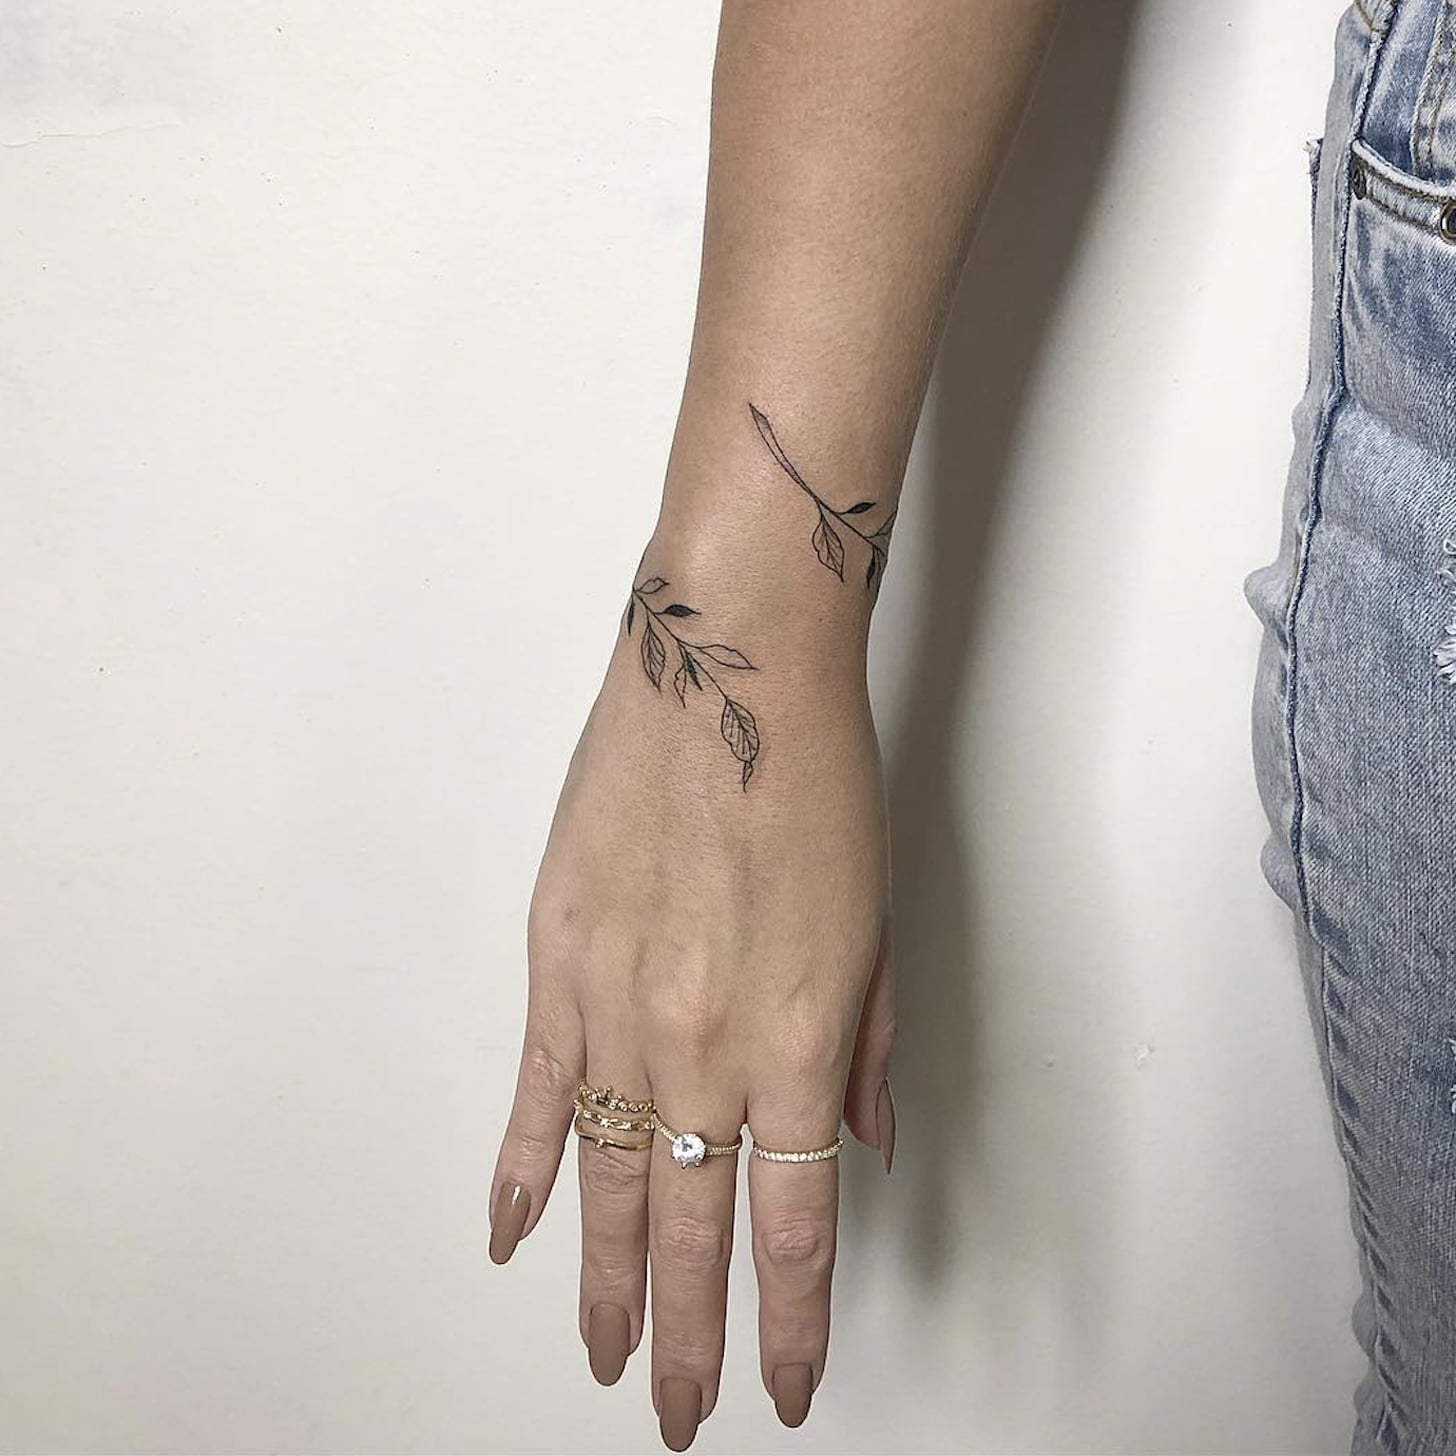 Dainty wrist bracelet tattoos